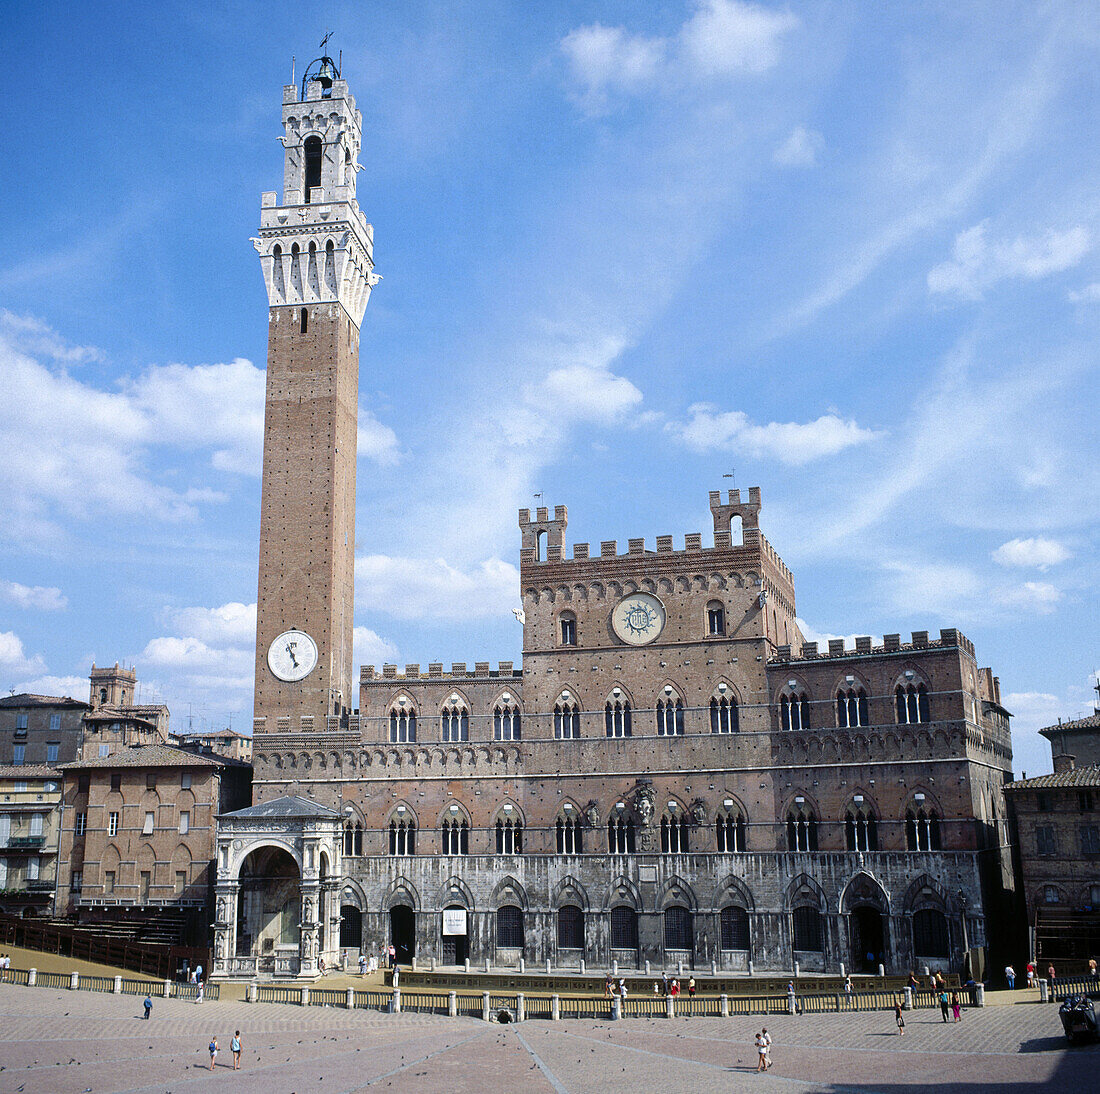 Piazza del Campo, Siena. Tuscany, Italy (1297-1310)